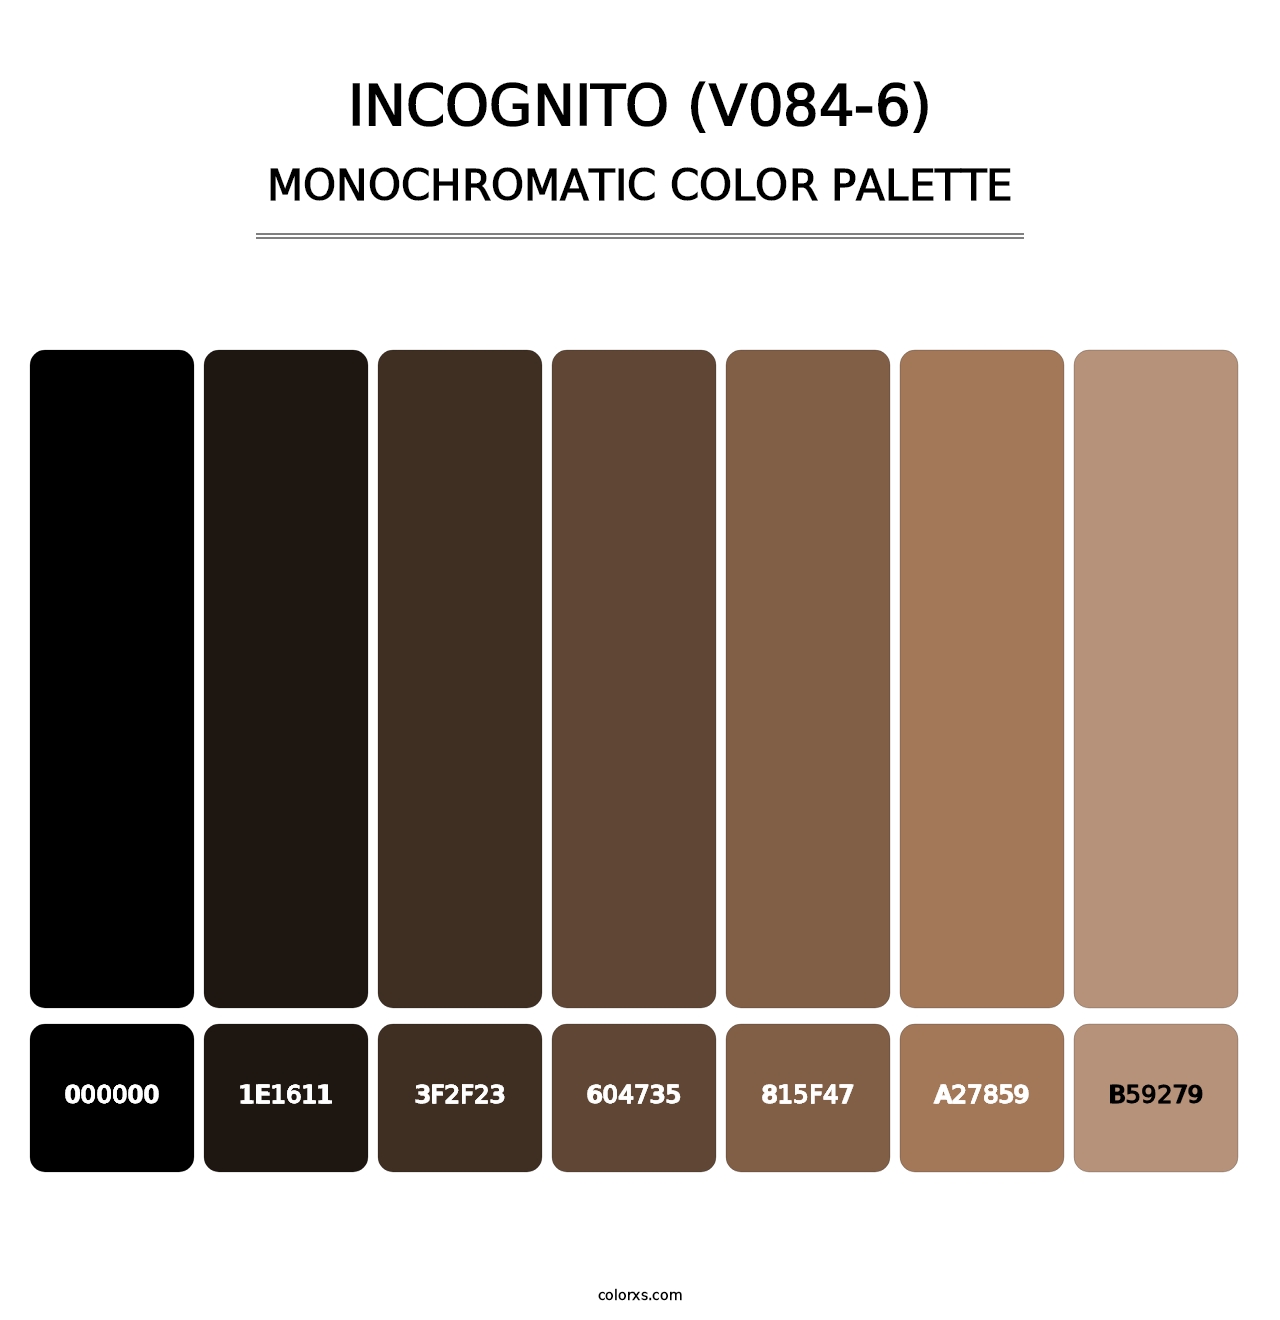 Incognito (V084-6) - Monochromatic Color Palette